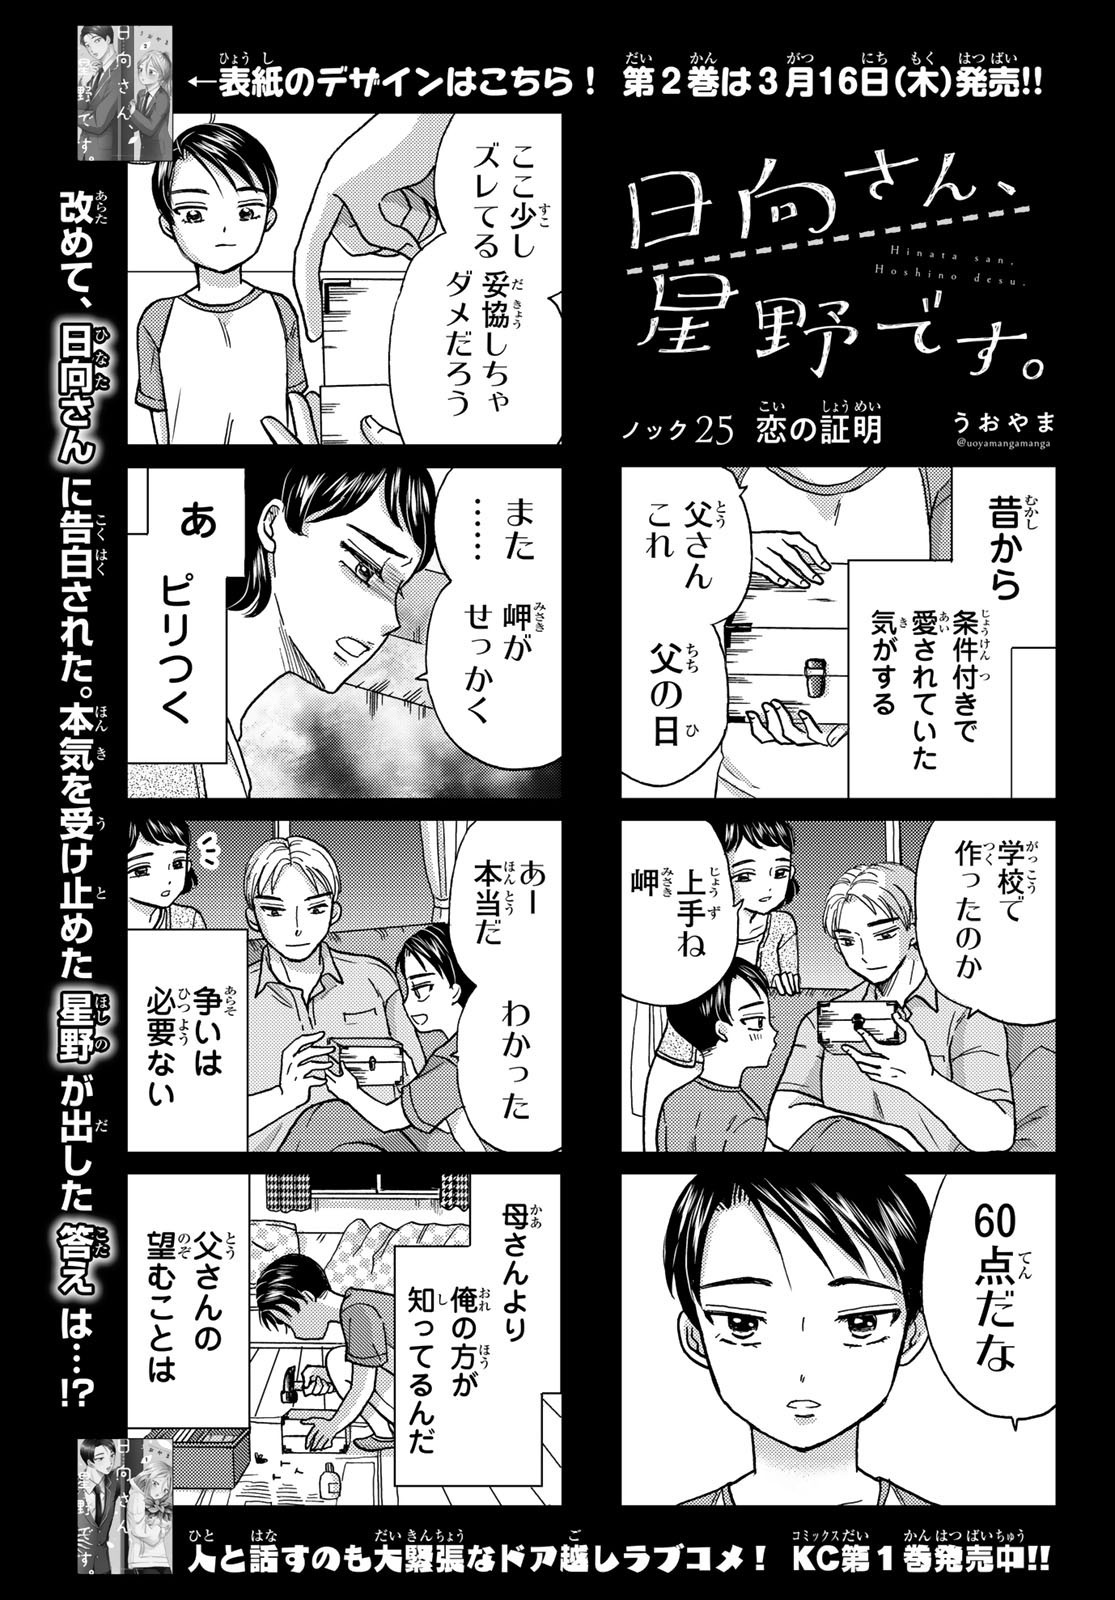 Hinata-san, Hoshino desu. - Chapter 025 - Page 1